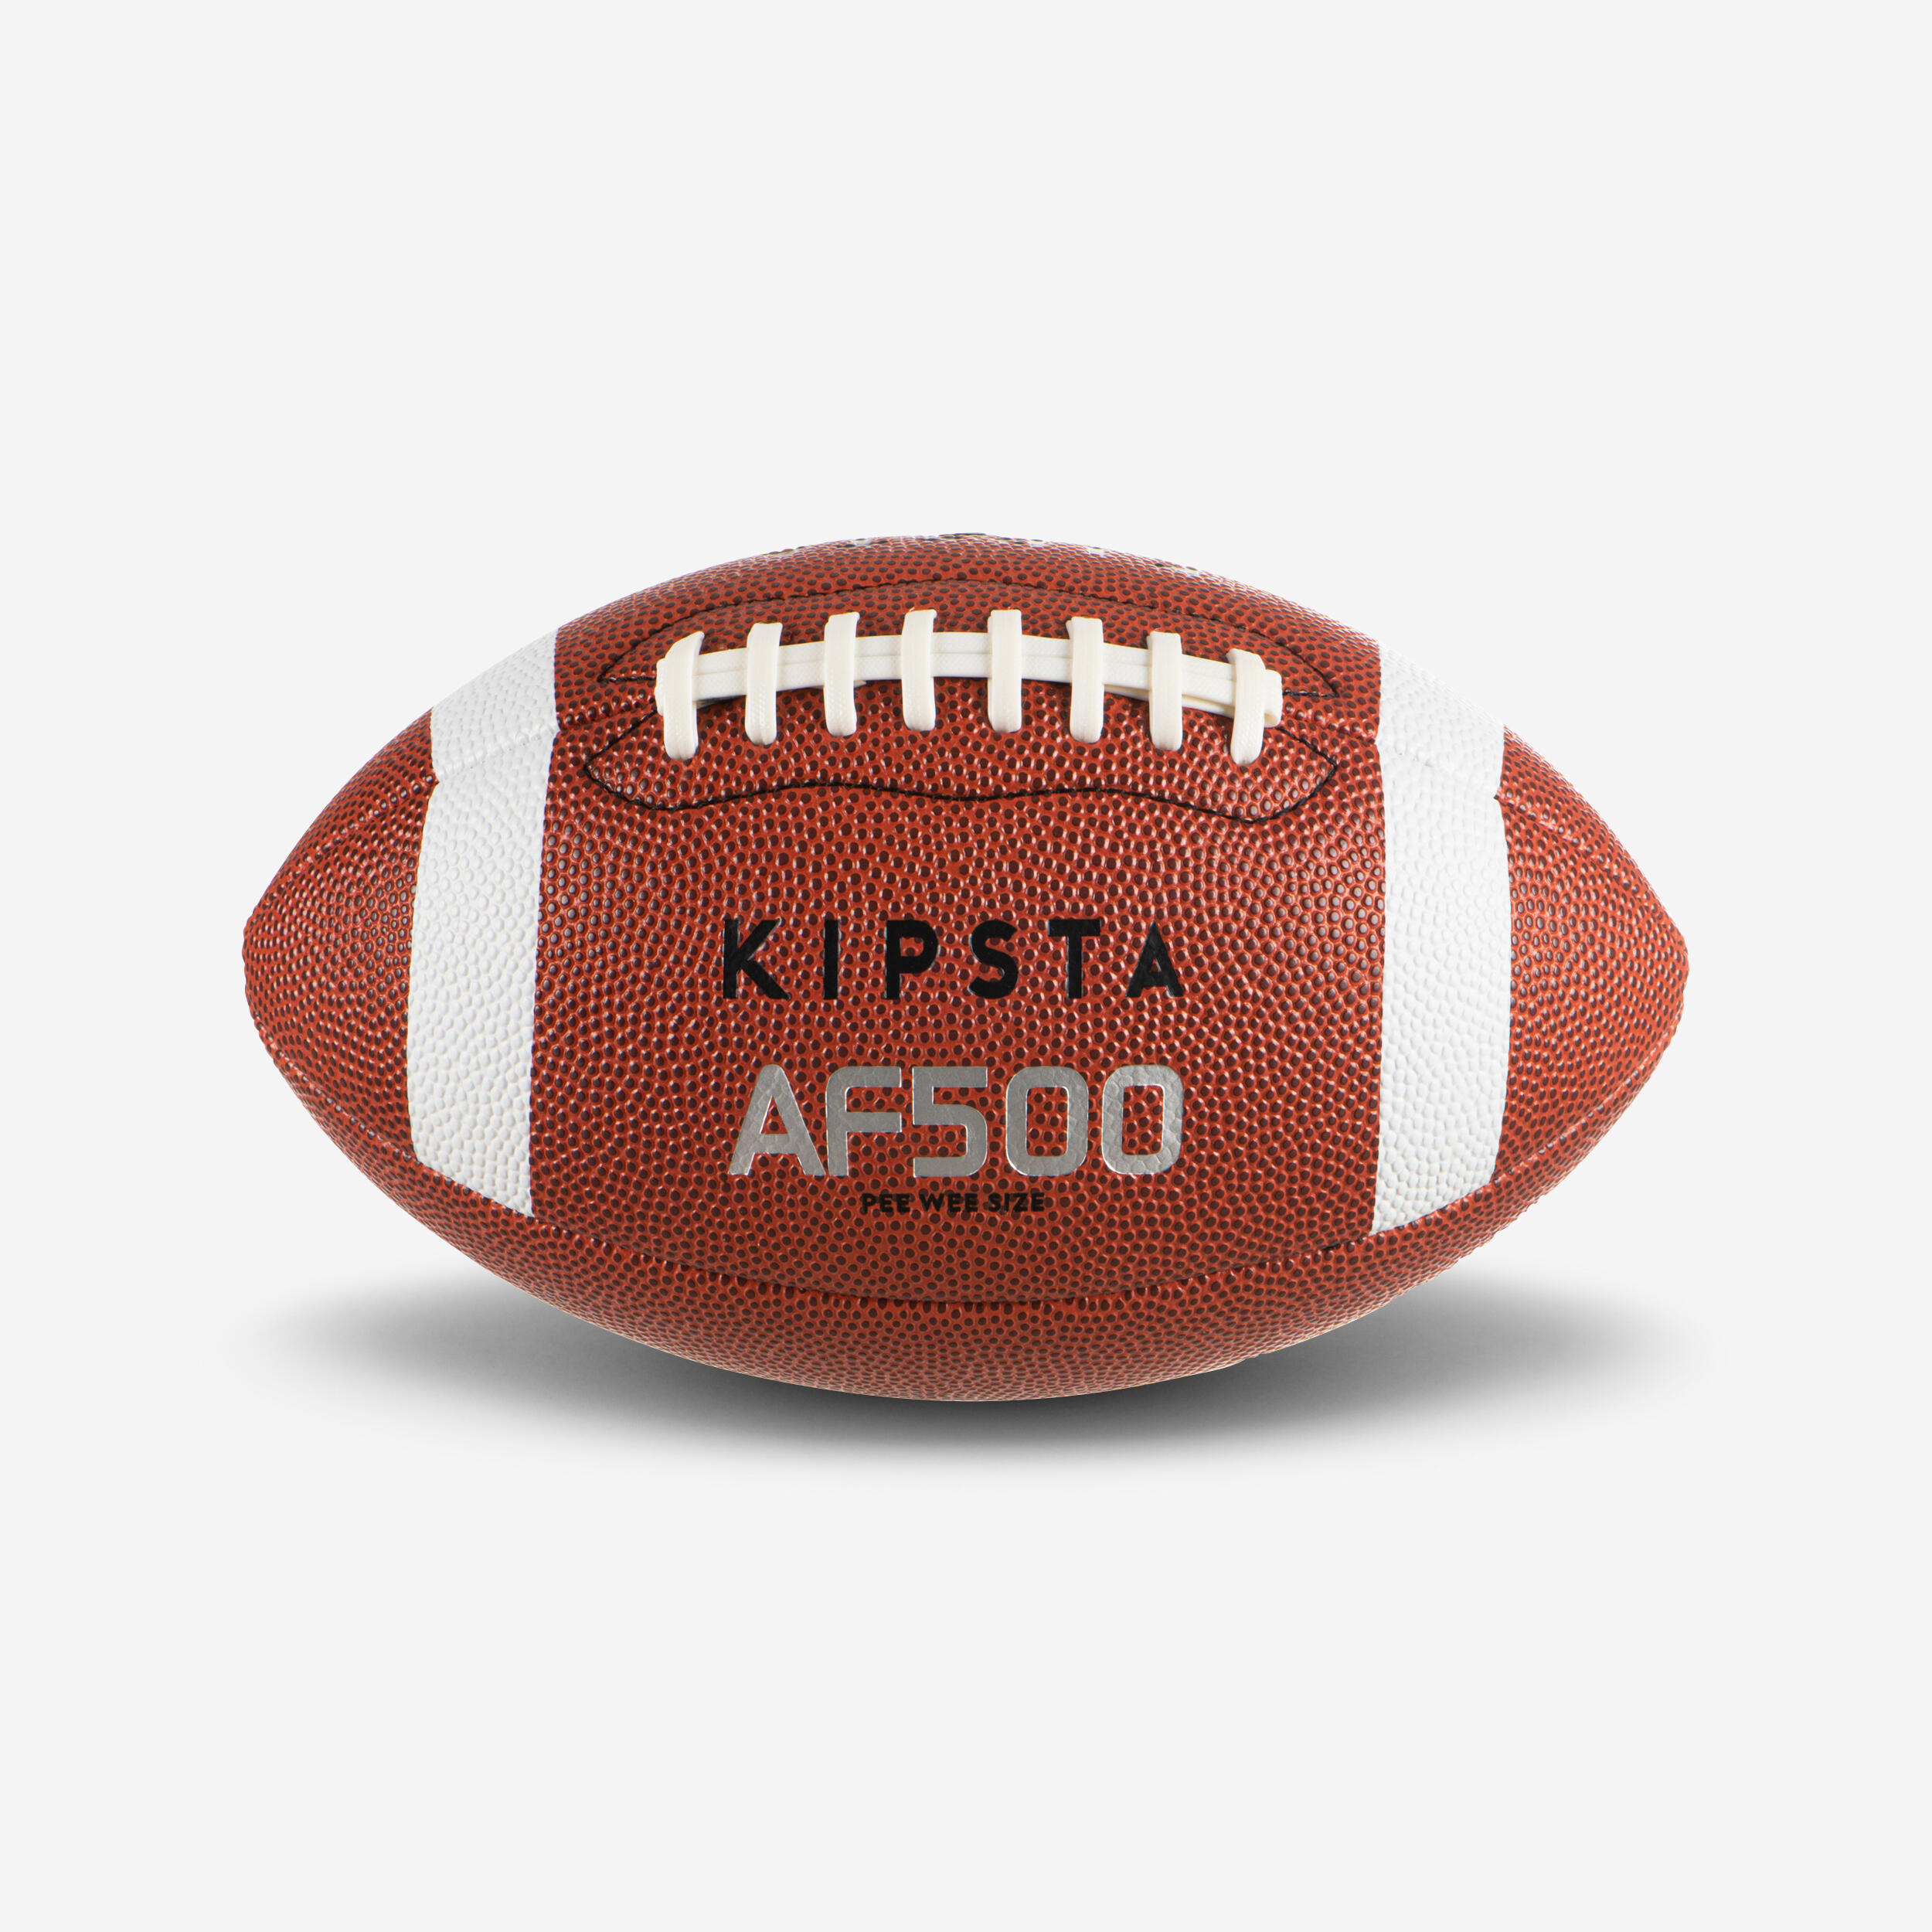 KIPSTA Pee Wee Size American Football AF500BPW - Brown